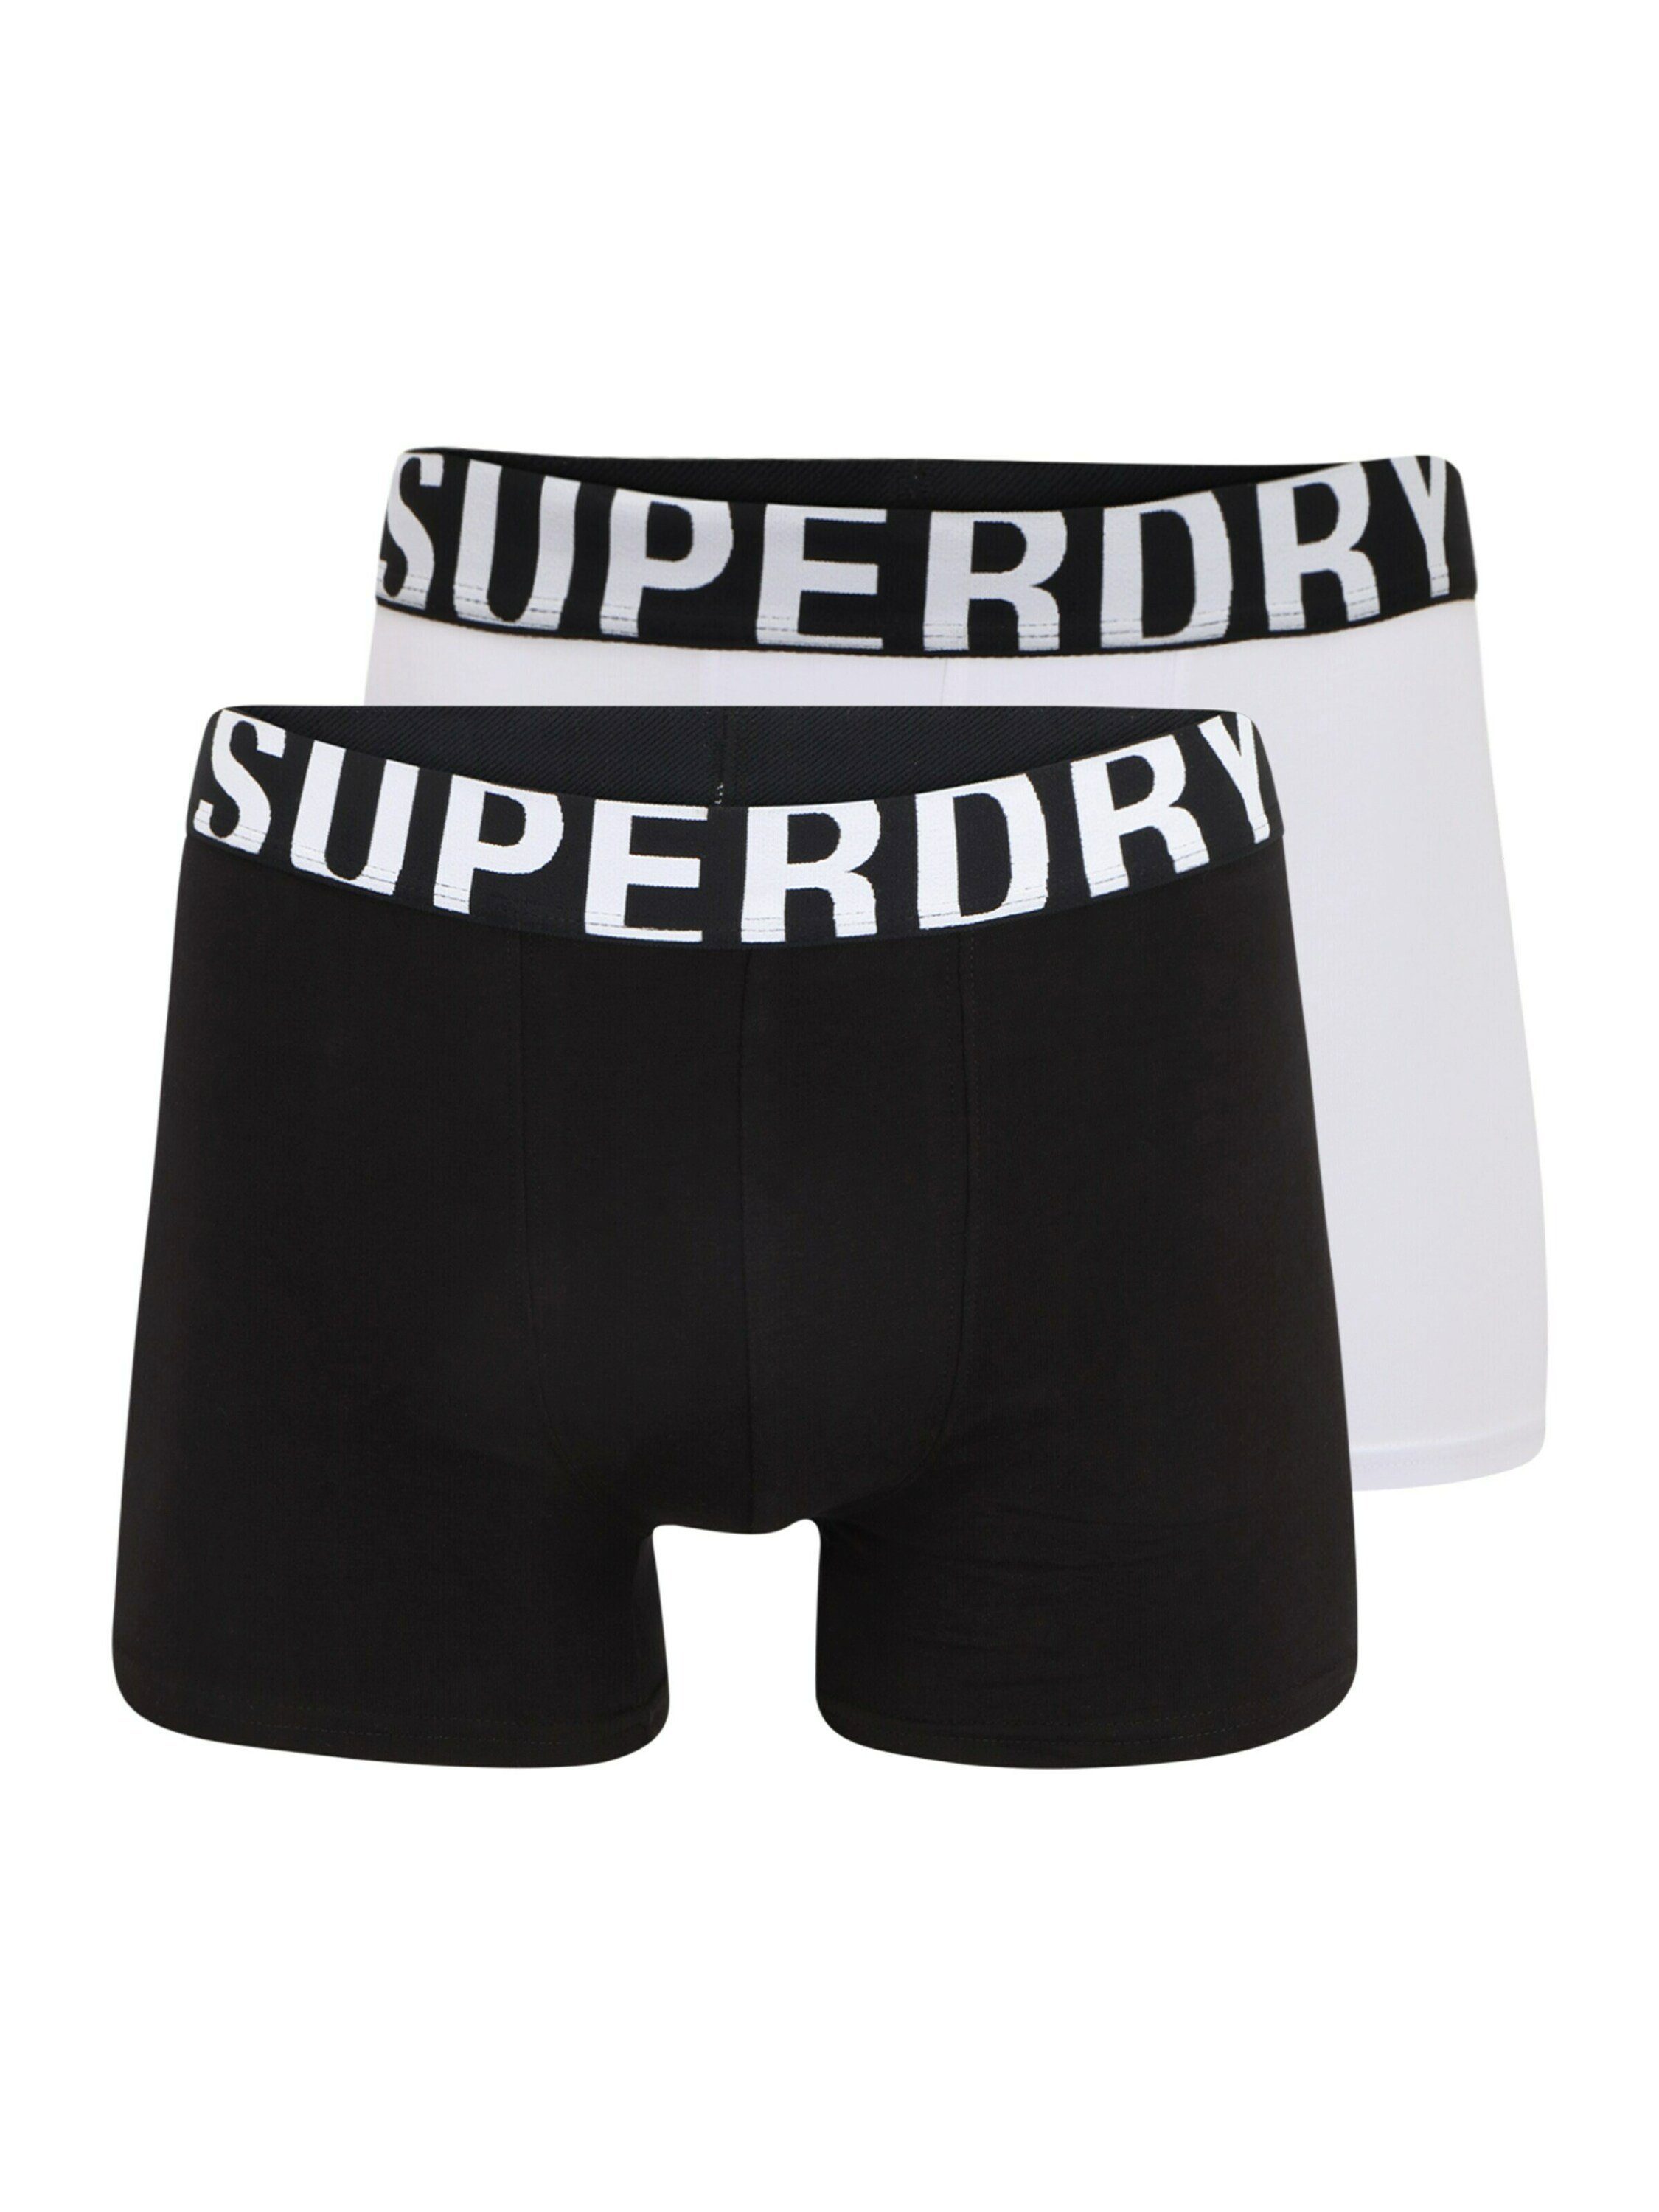 Wäsche/Bademode Boxershorts Superdry Boxershorts (2 Stück)